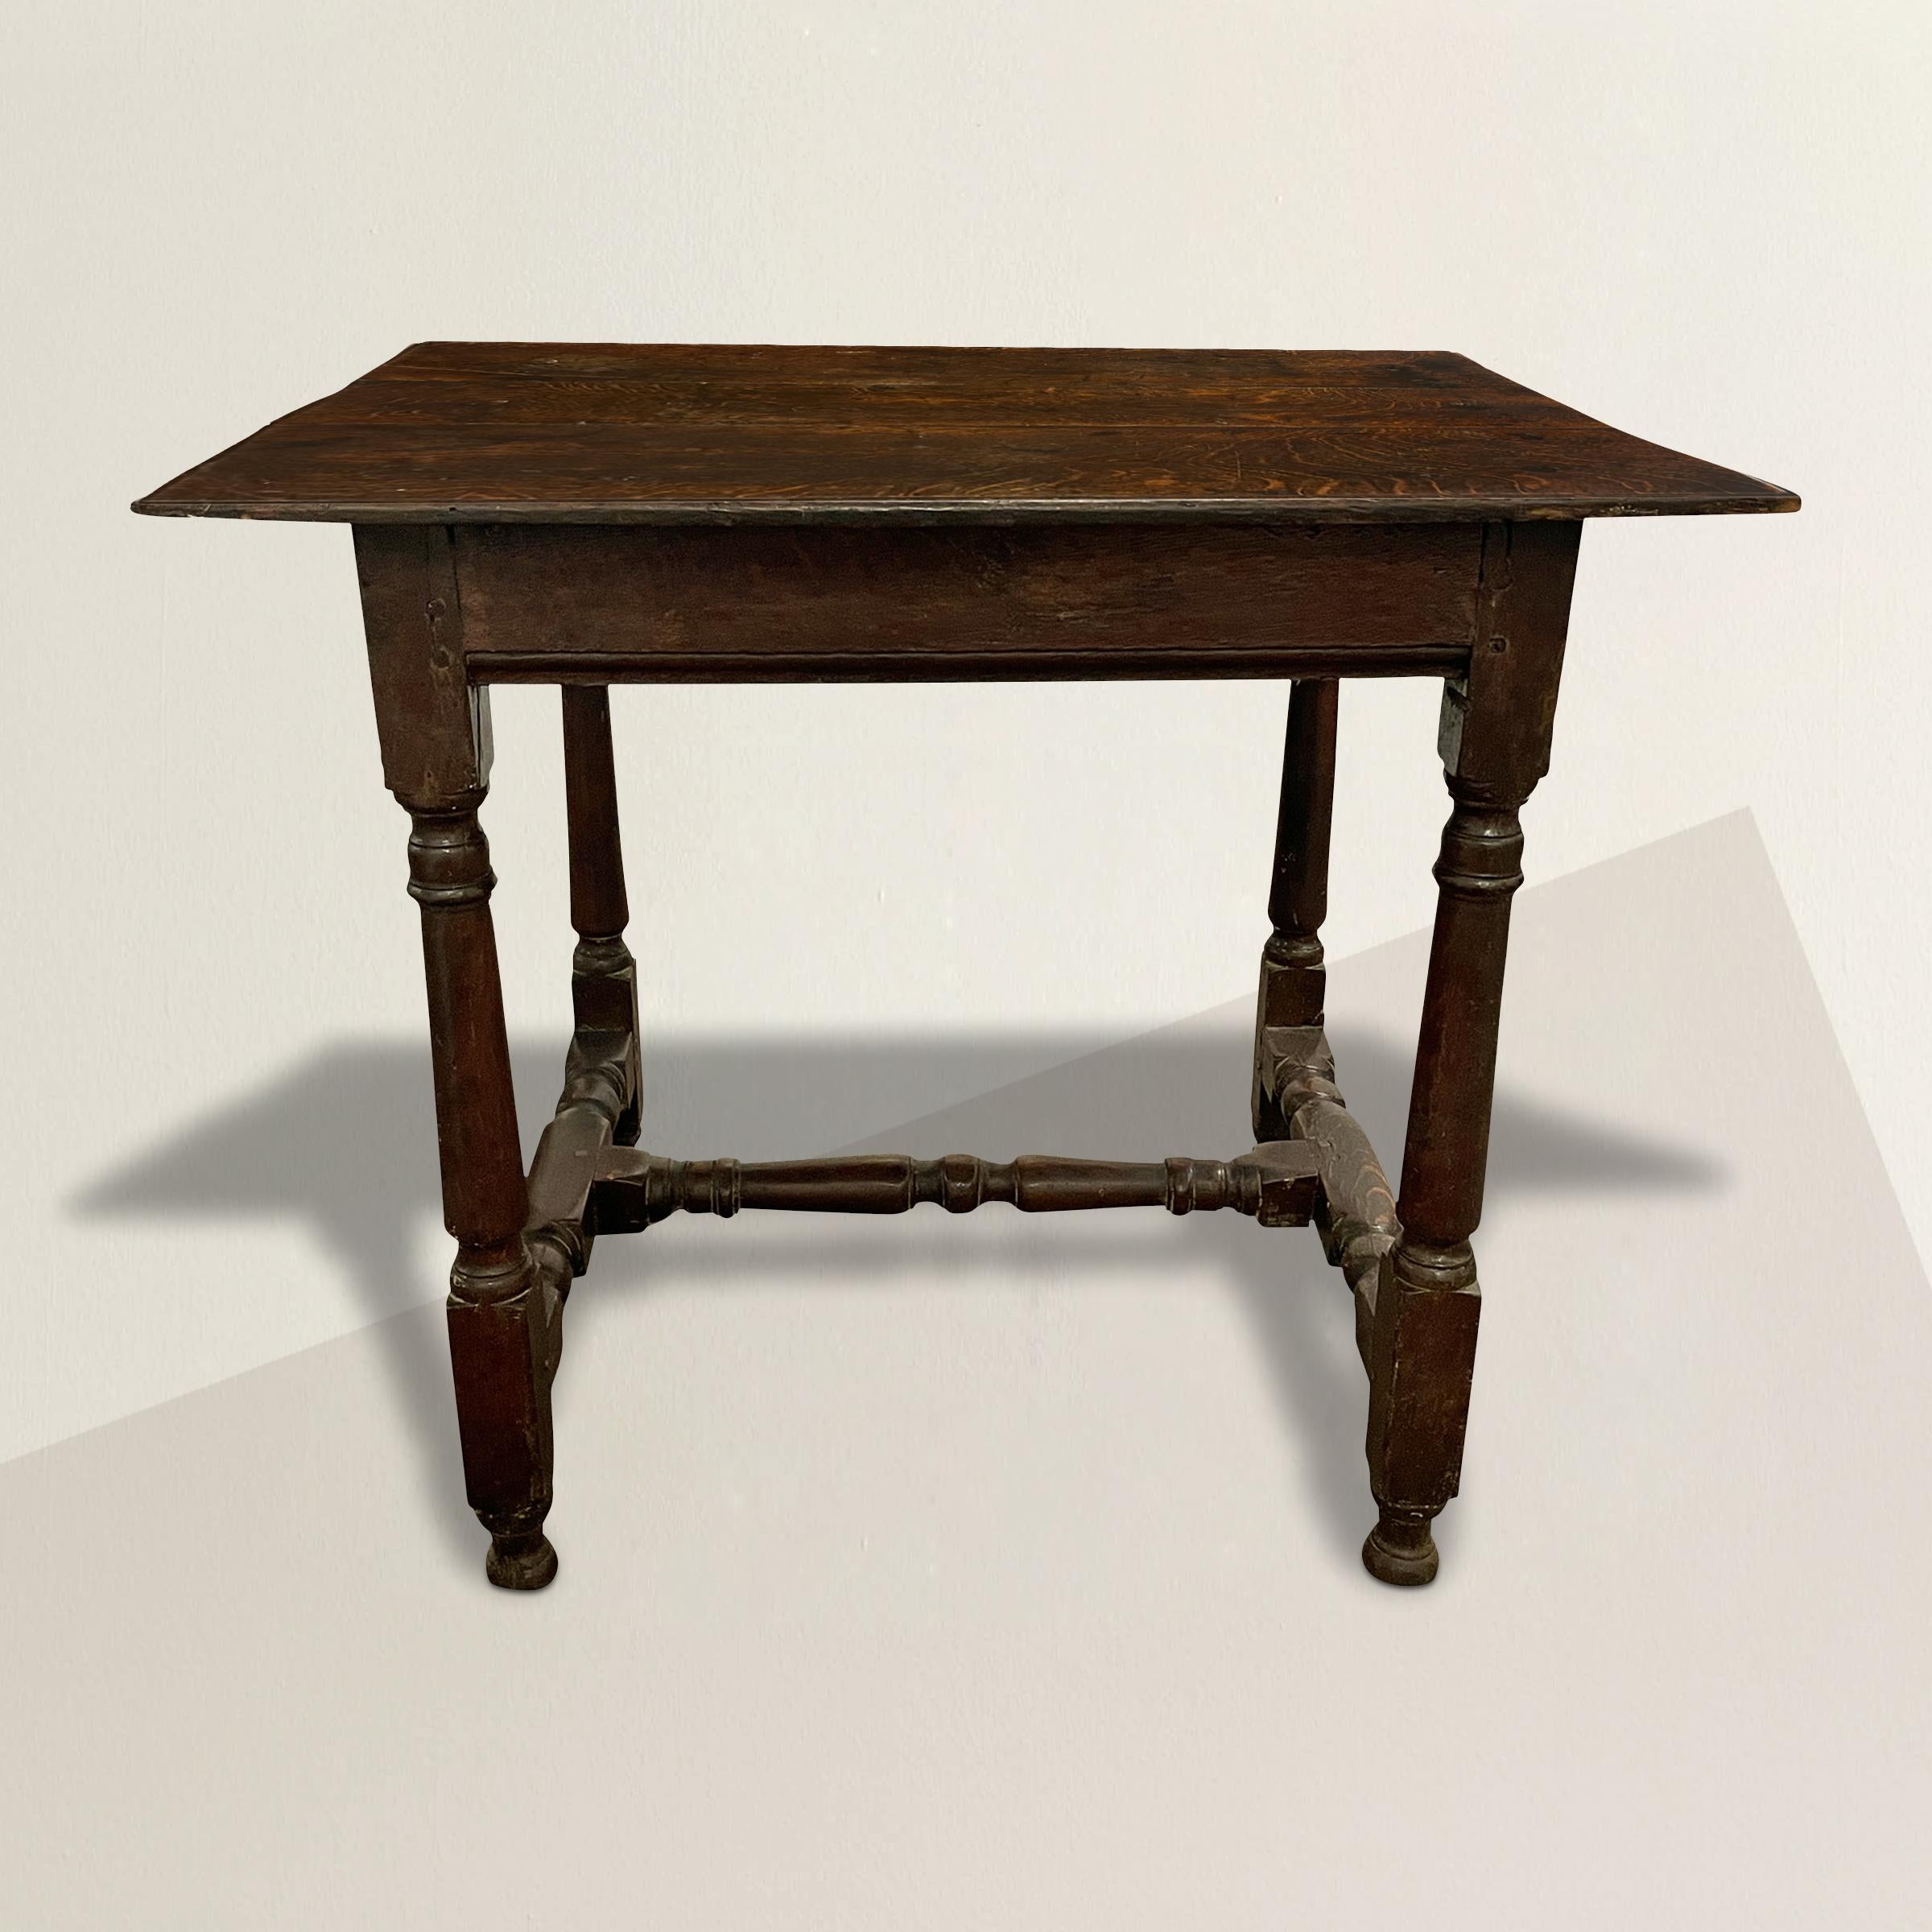 Remarquable table William et Mary en chêne anglais du XVIIe siècle, avec un plateau à trois planches sur une frise unie, et avec des pieds tournés effilés, des brancards tournés avec une surface bien usée, et élevés sur des pieds tournés. La table